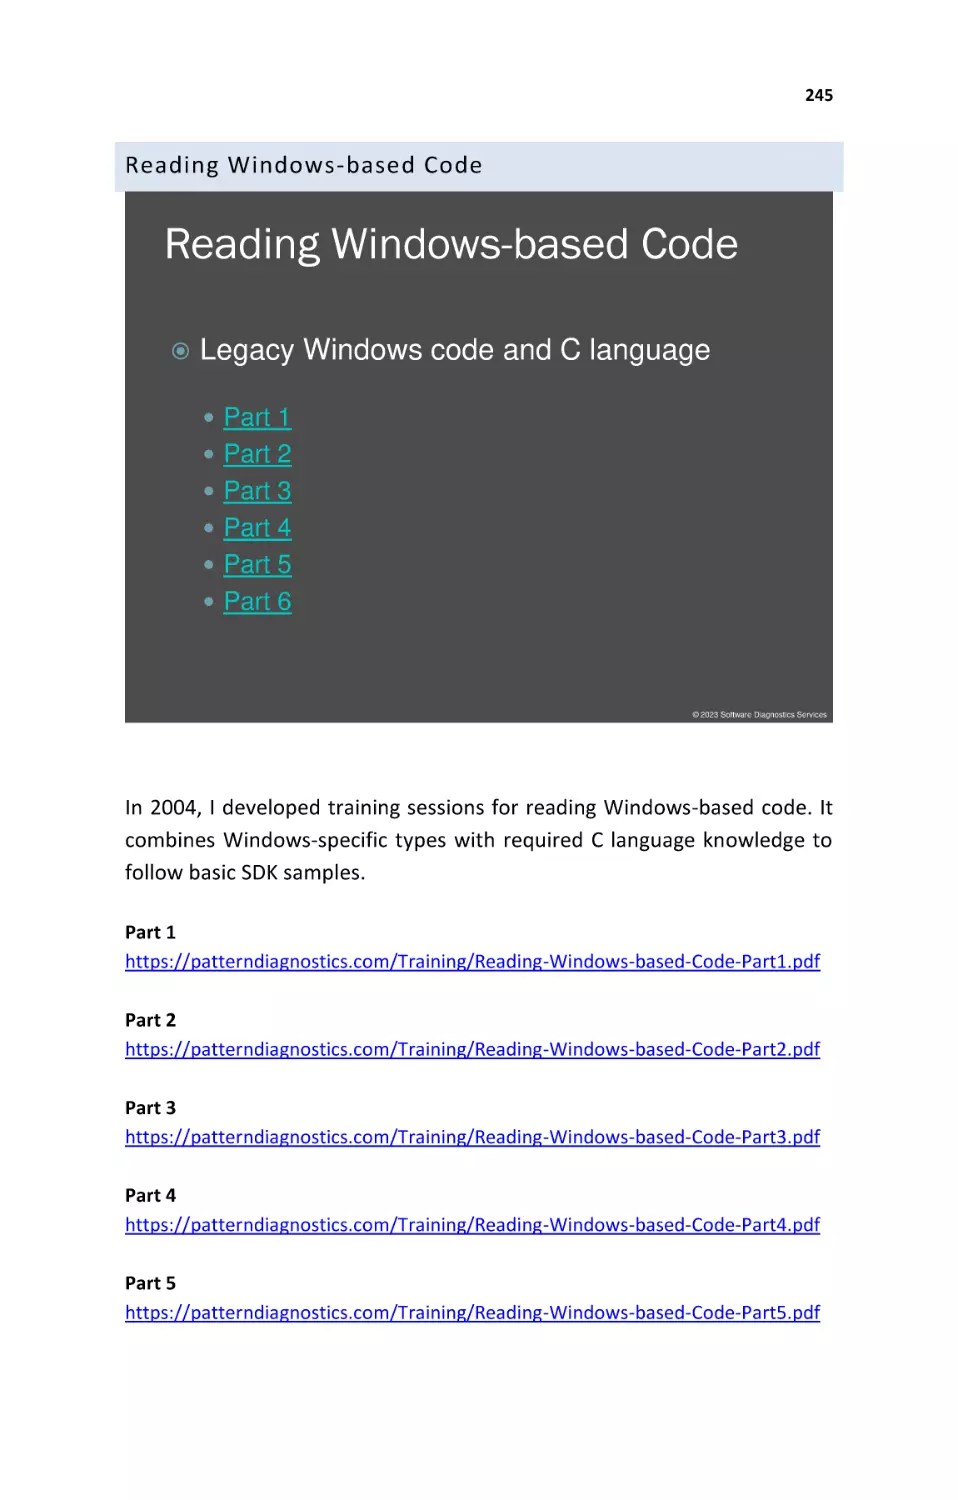 Reading Windows-based Code